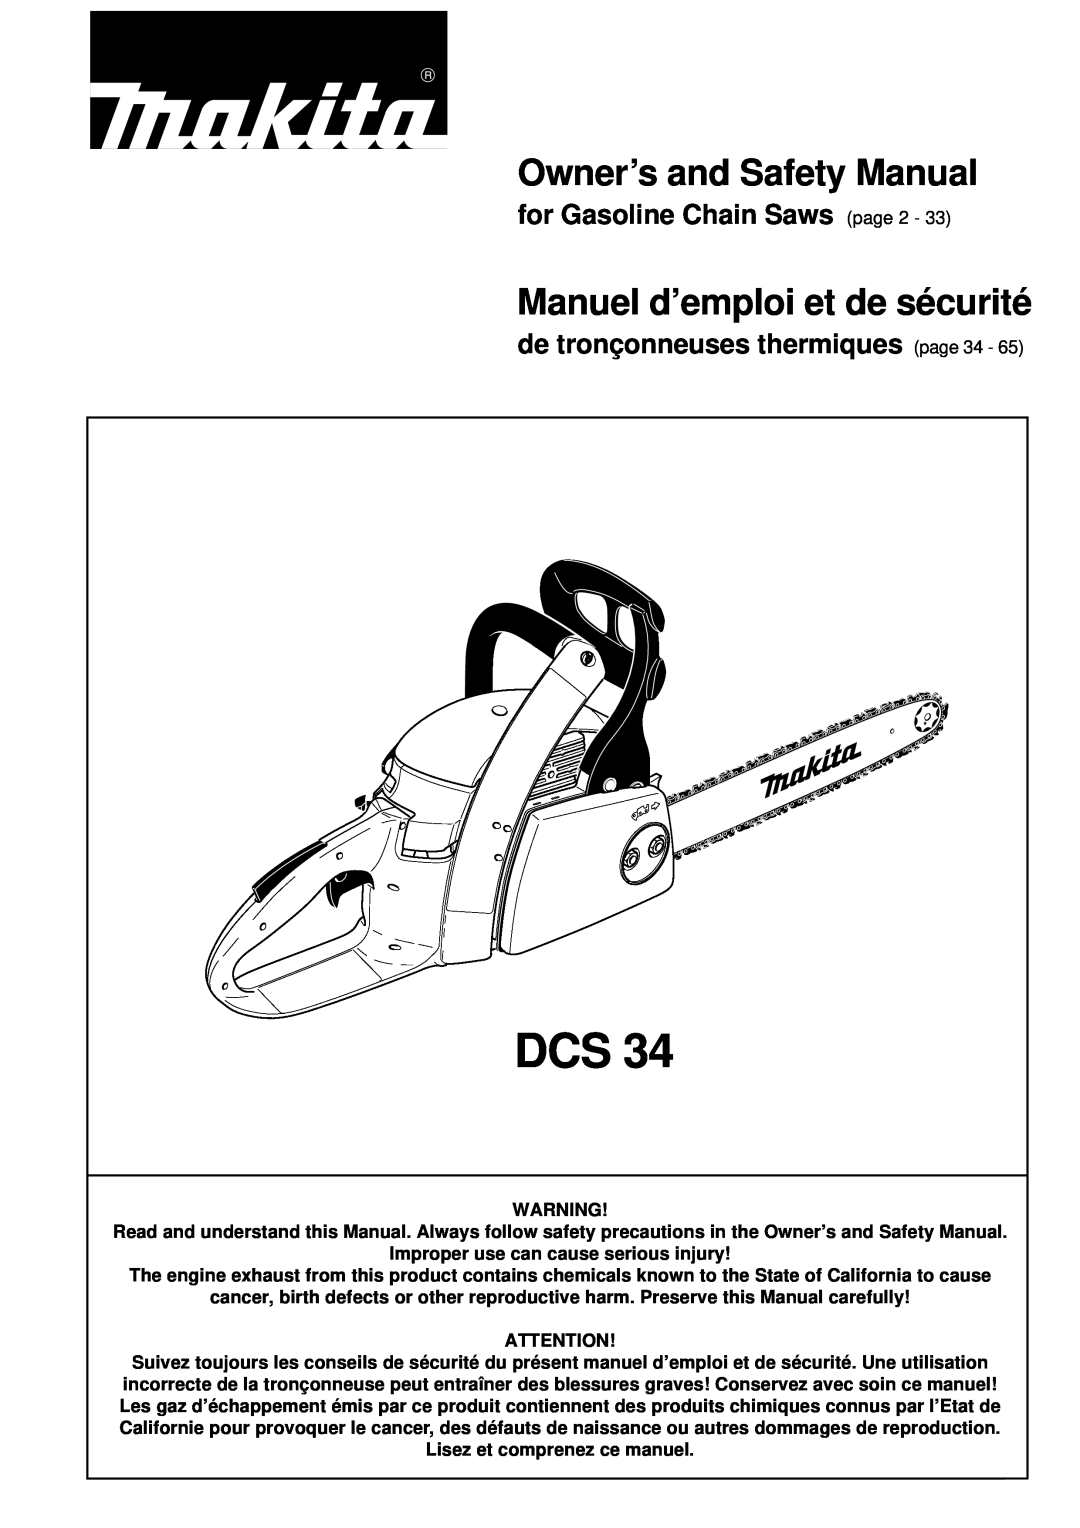 Makita DCS34 manual Owner’s and Safety Manual, Manuel d’emploi et de sécurité, for Gasoline Chain Saws page 2 